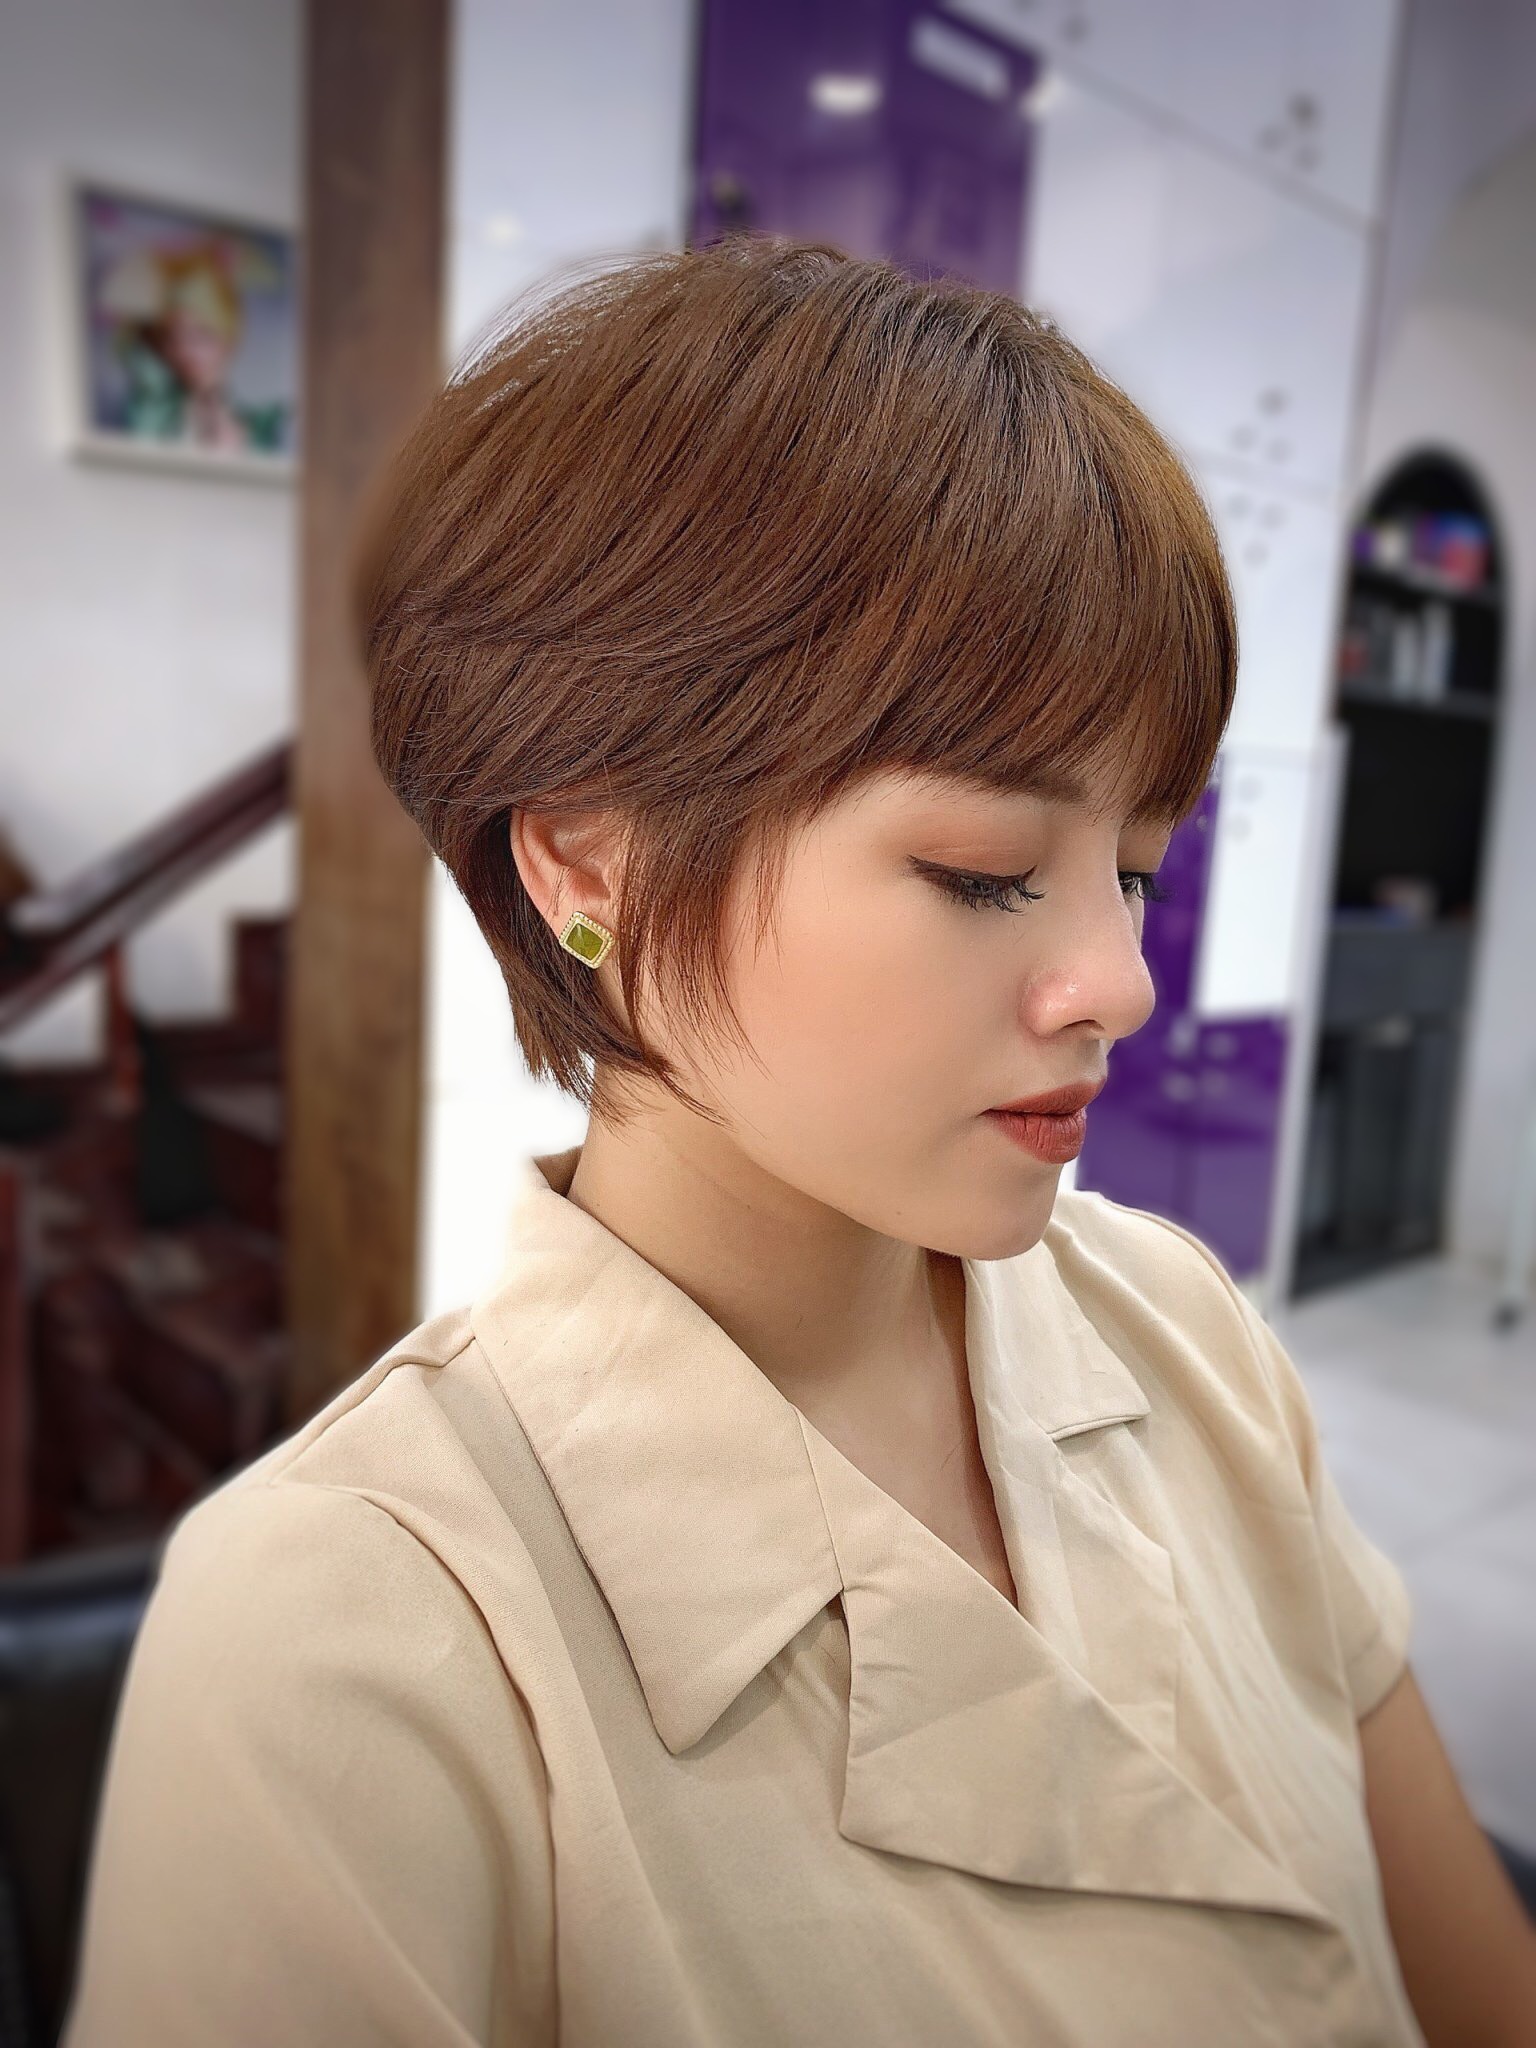 15 kiểu tóc tém đẹp nhất năm 2020 cho nữ phù hợp với mọi khuôn mặt  Báo  Phụ Nữ Việt Nam